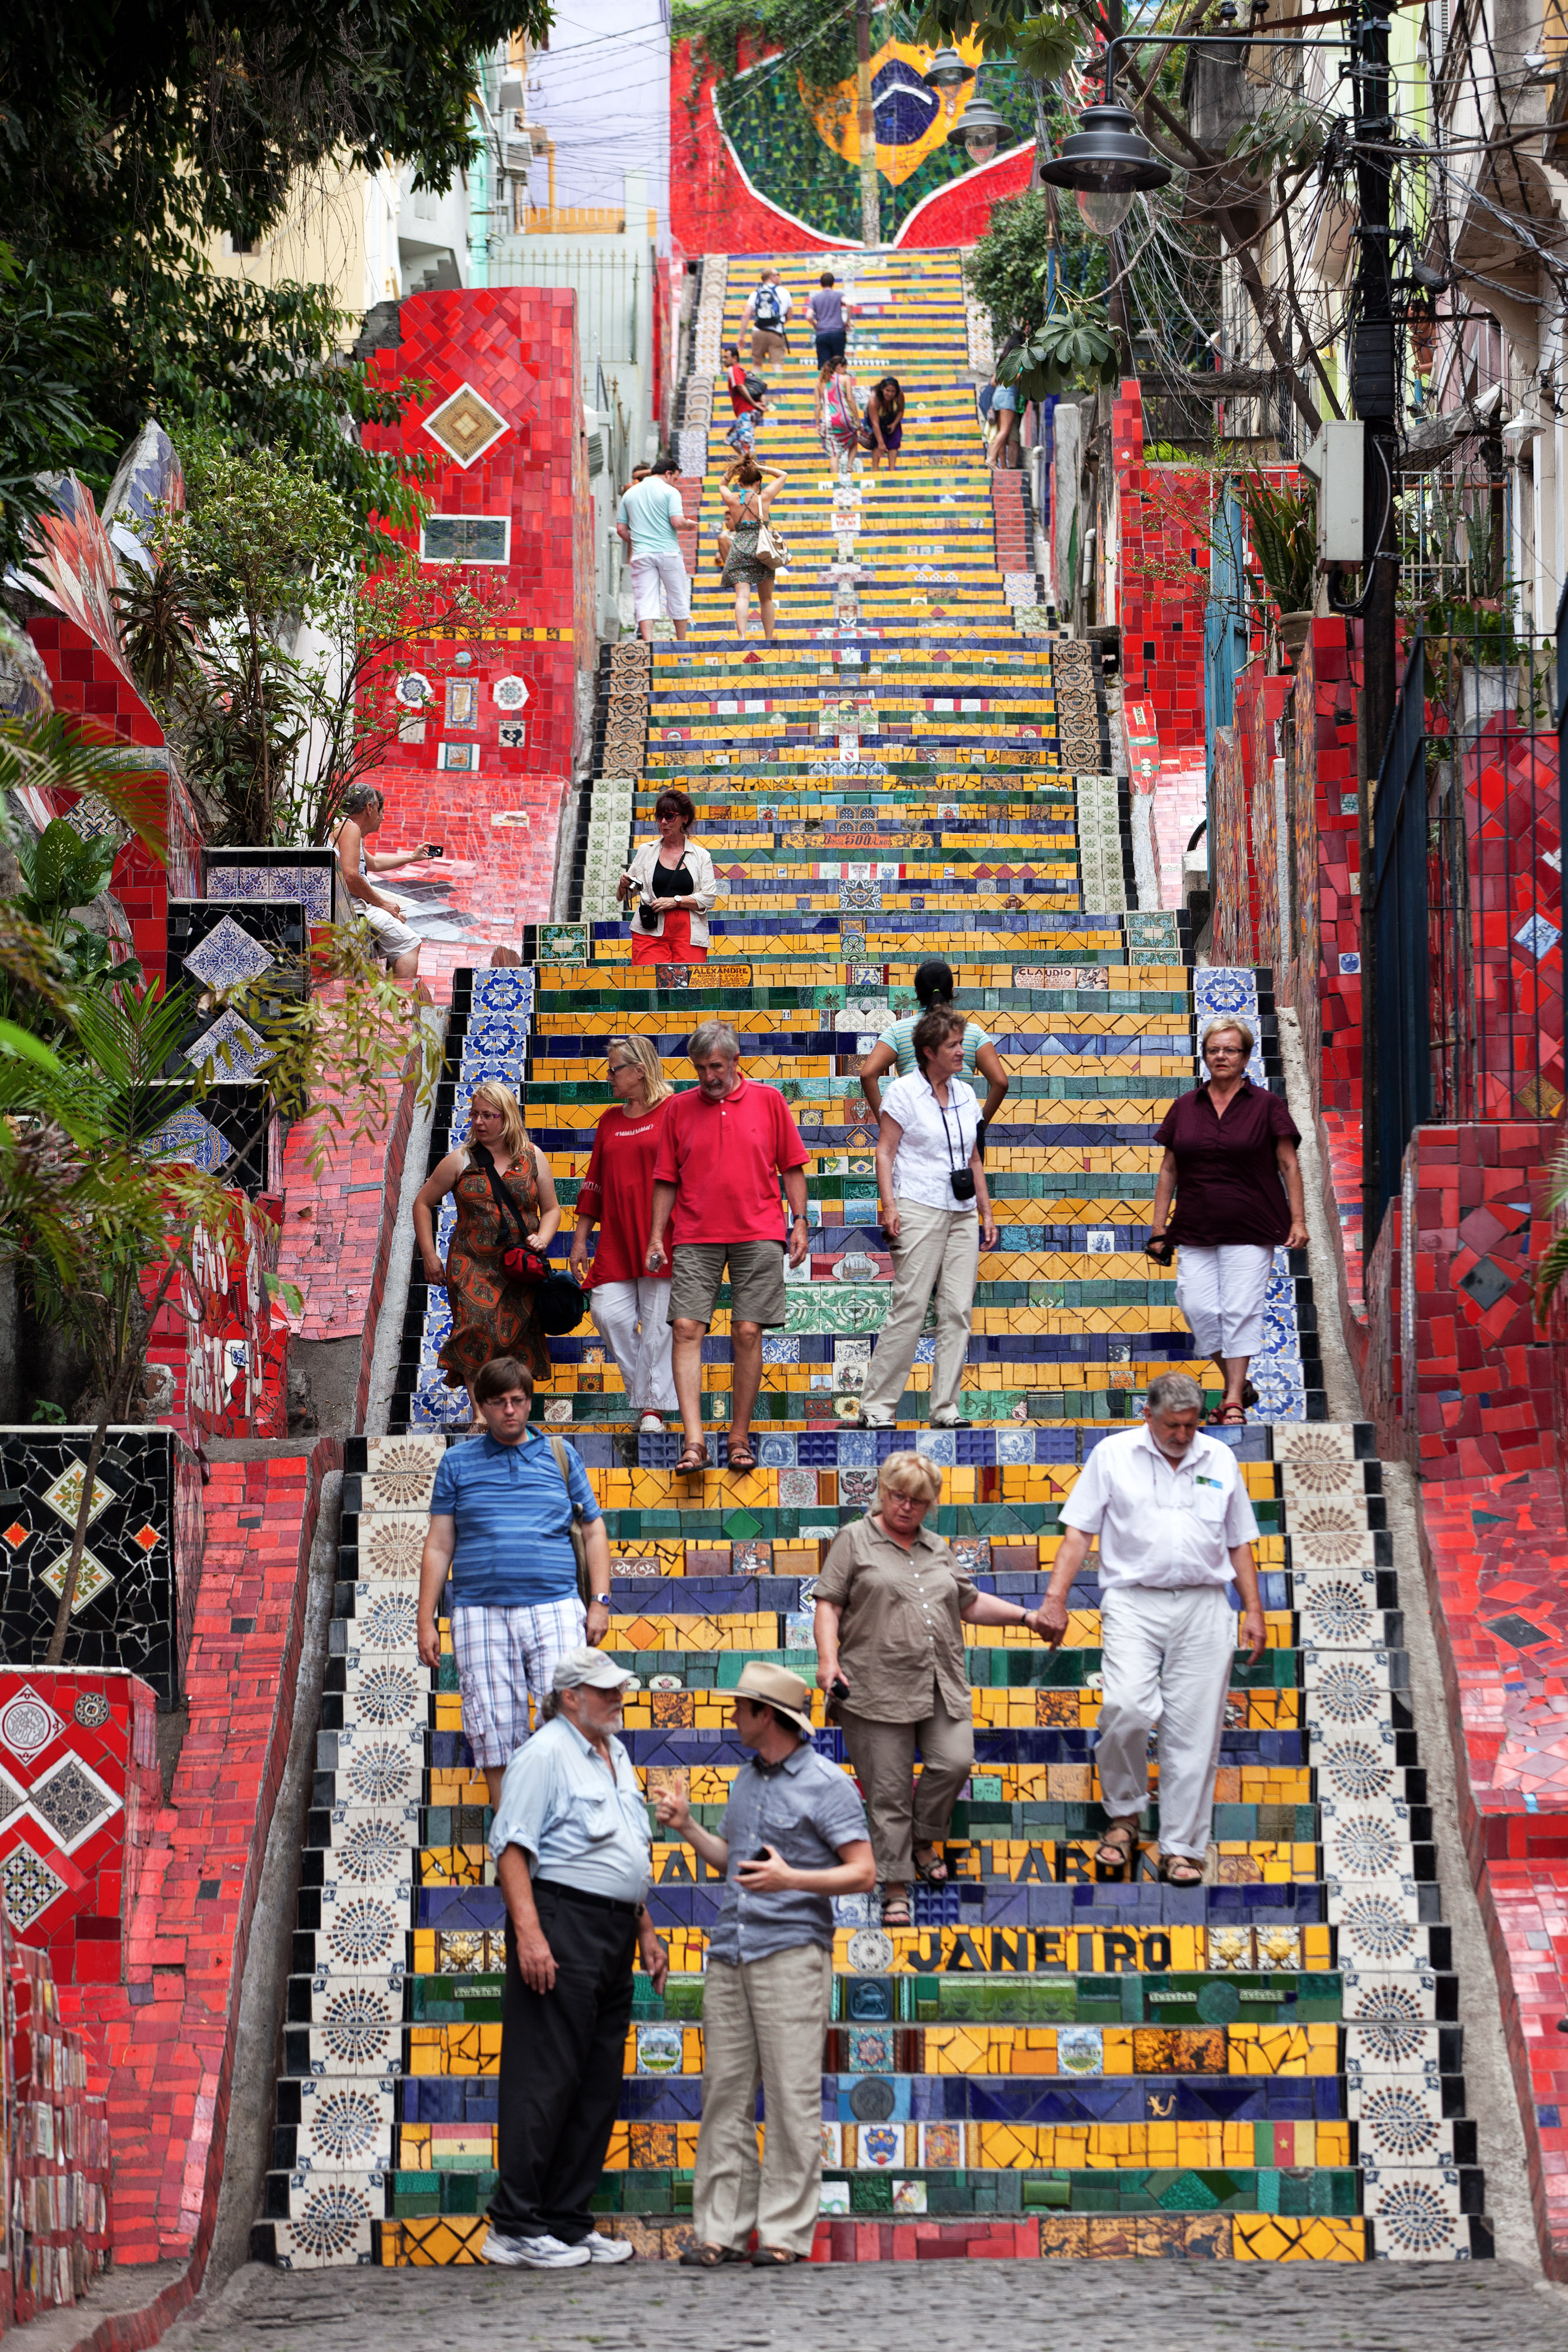 L’Escadaria Selaron a Rio de Janeiro: la storia di un tributo al popolo brasiliano